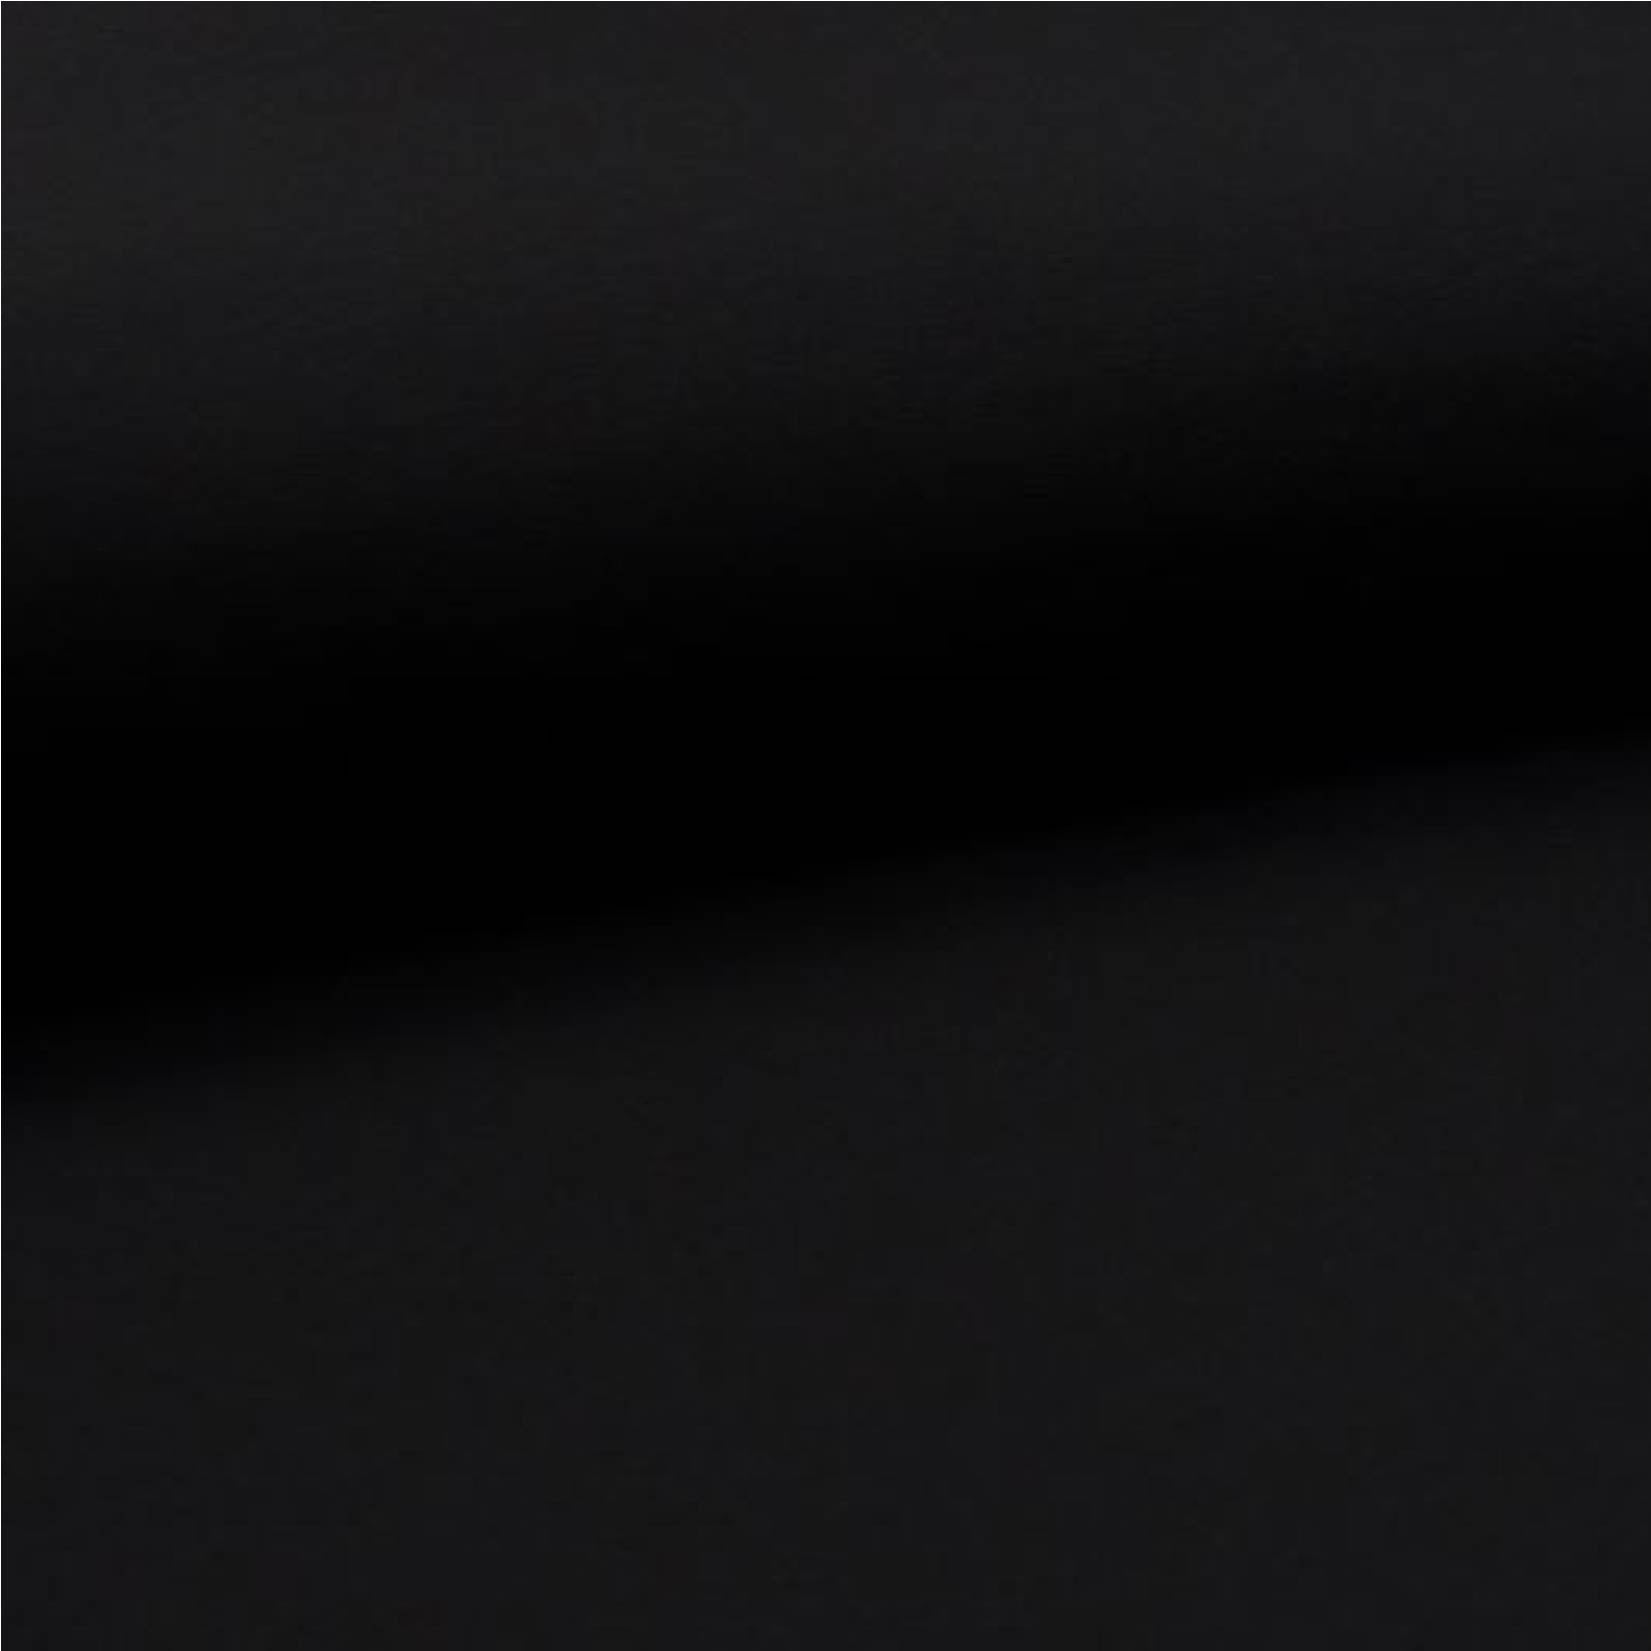 Fin de rouleau 35 cm - Noir - Jersey uni biologique